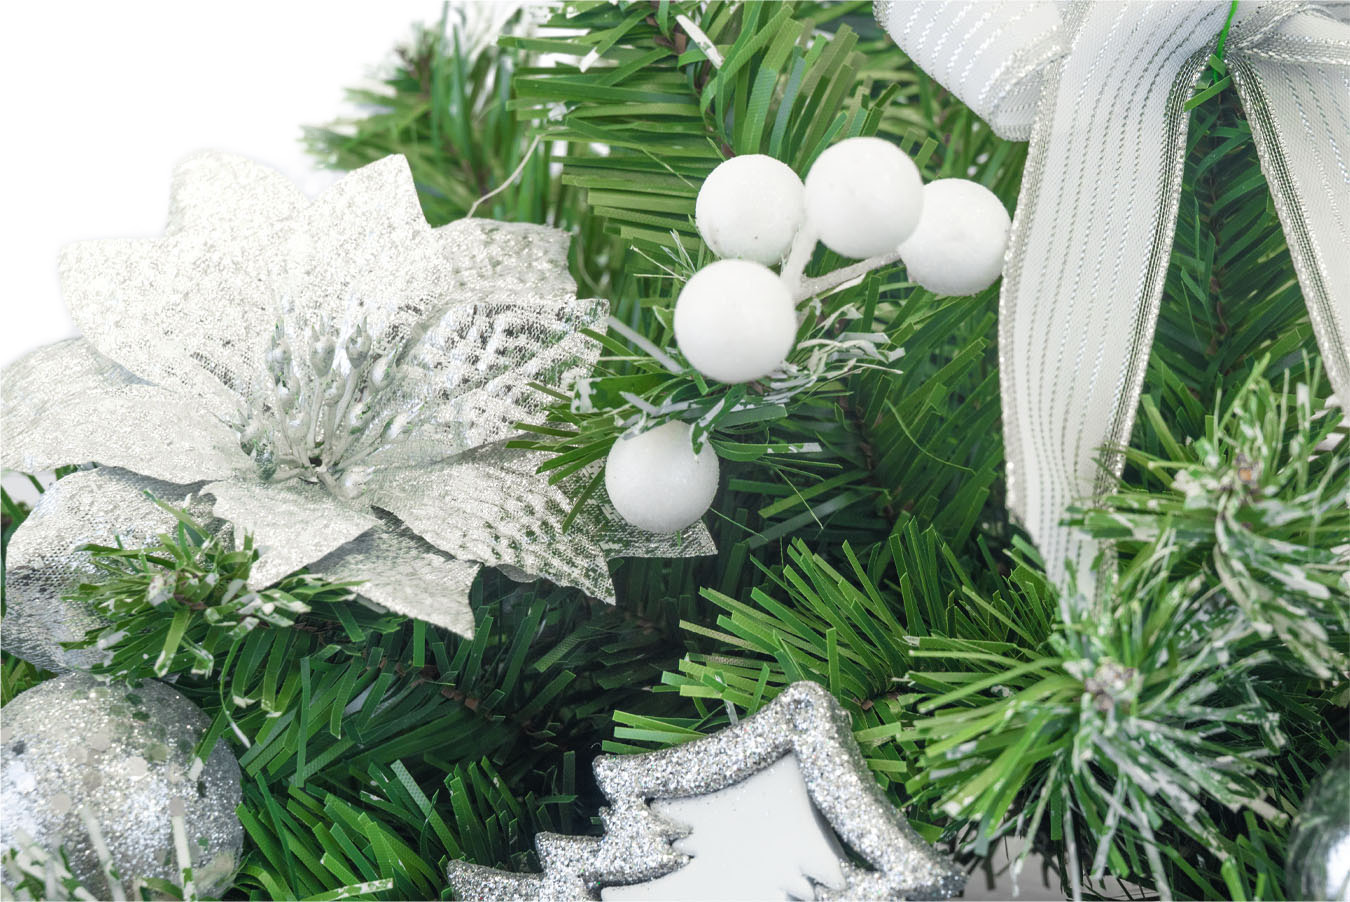 Božični okrasek - božična ikebana 60cm s srebrnimi dodatki